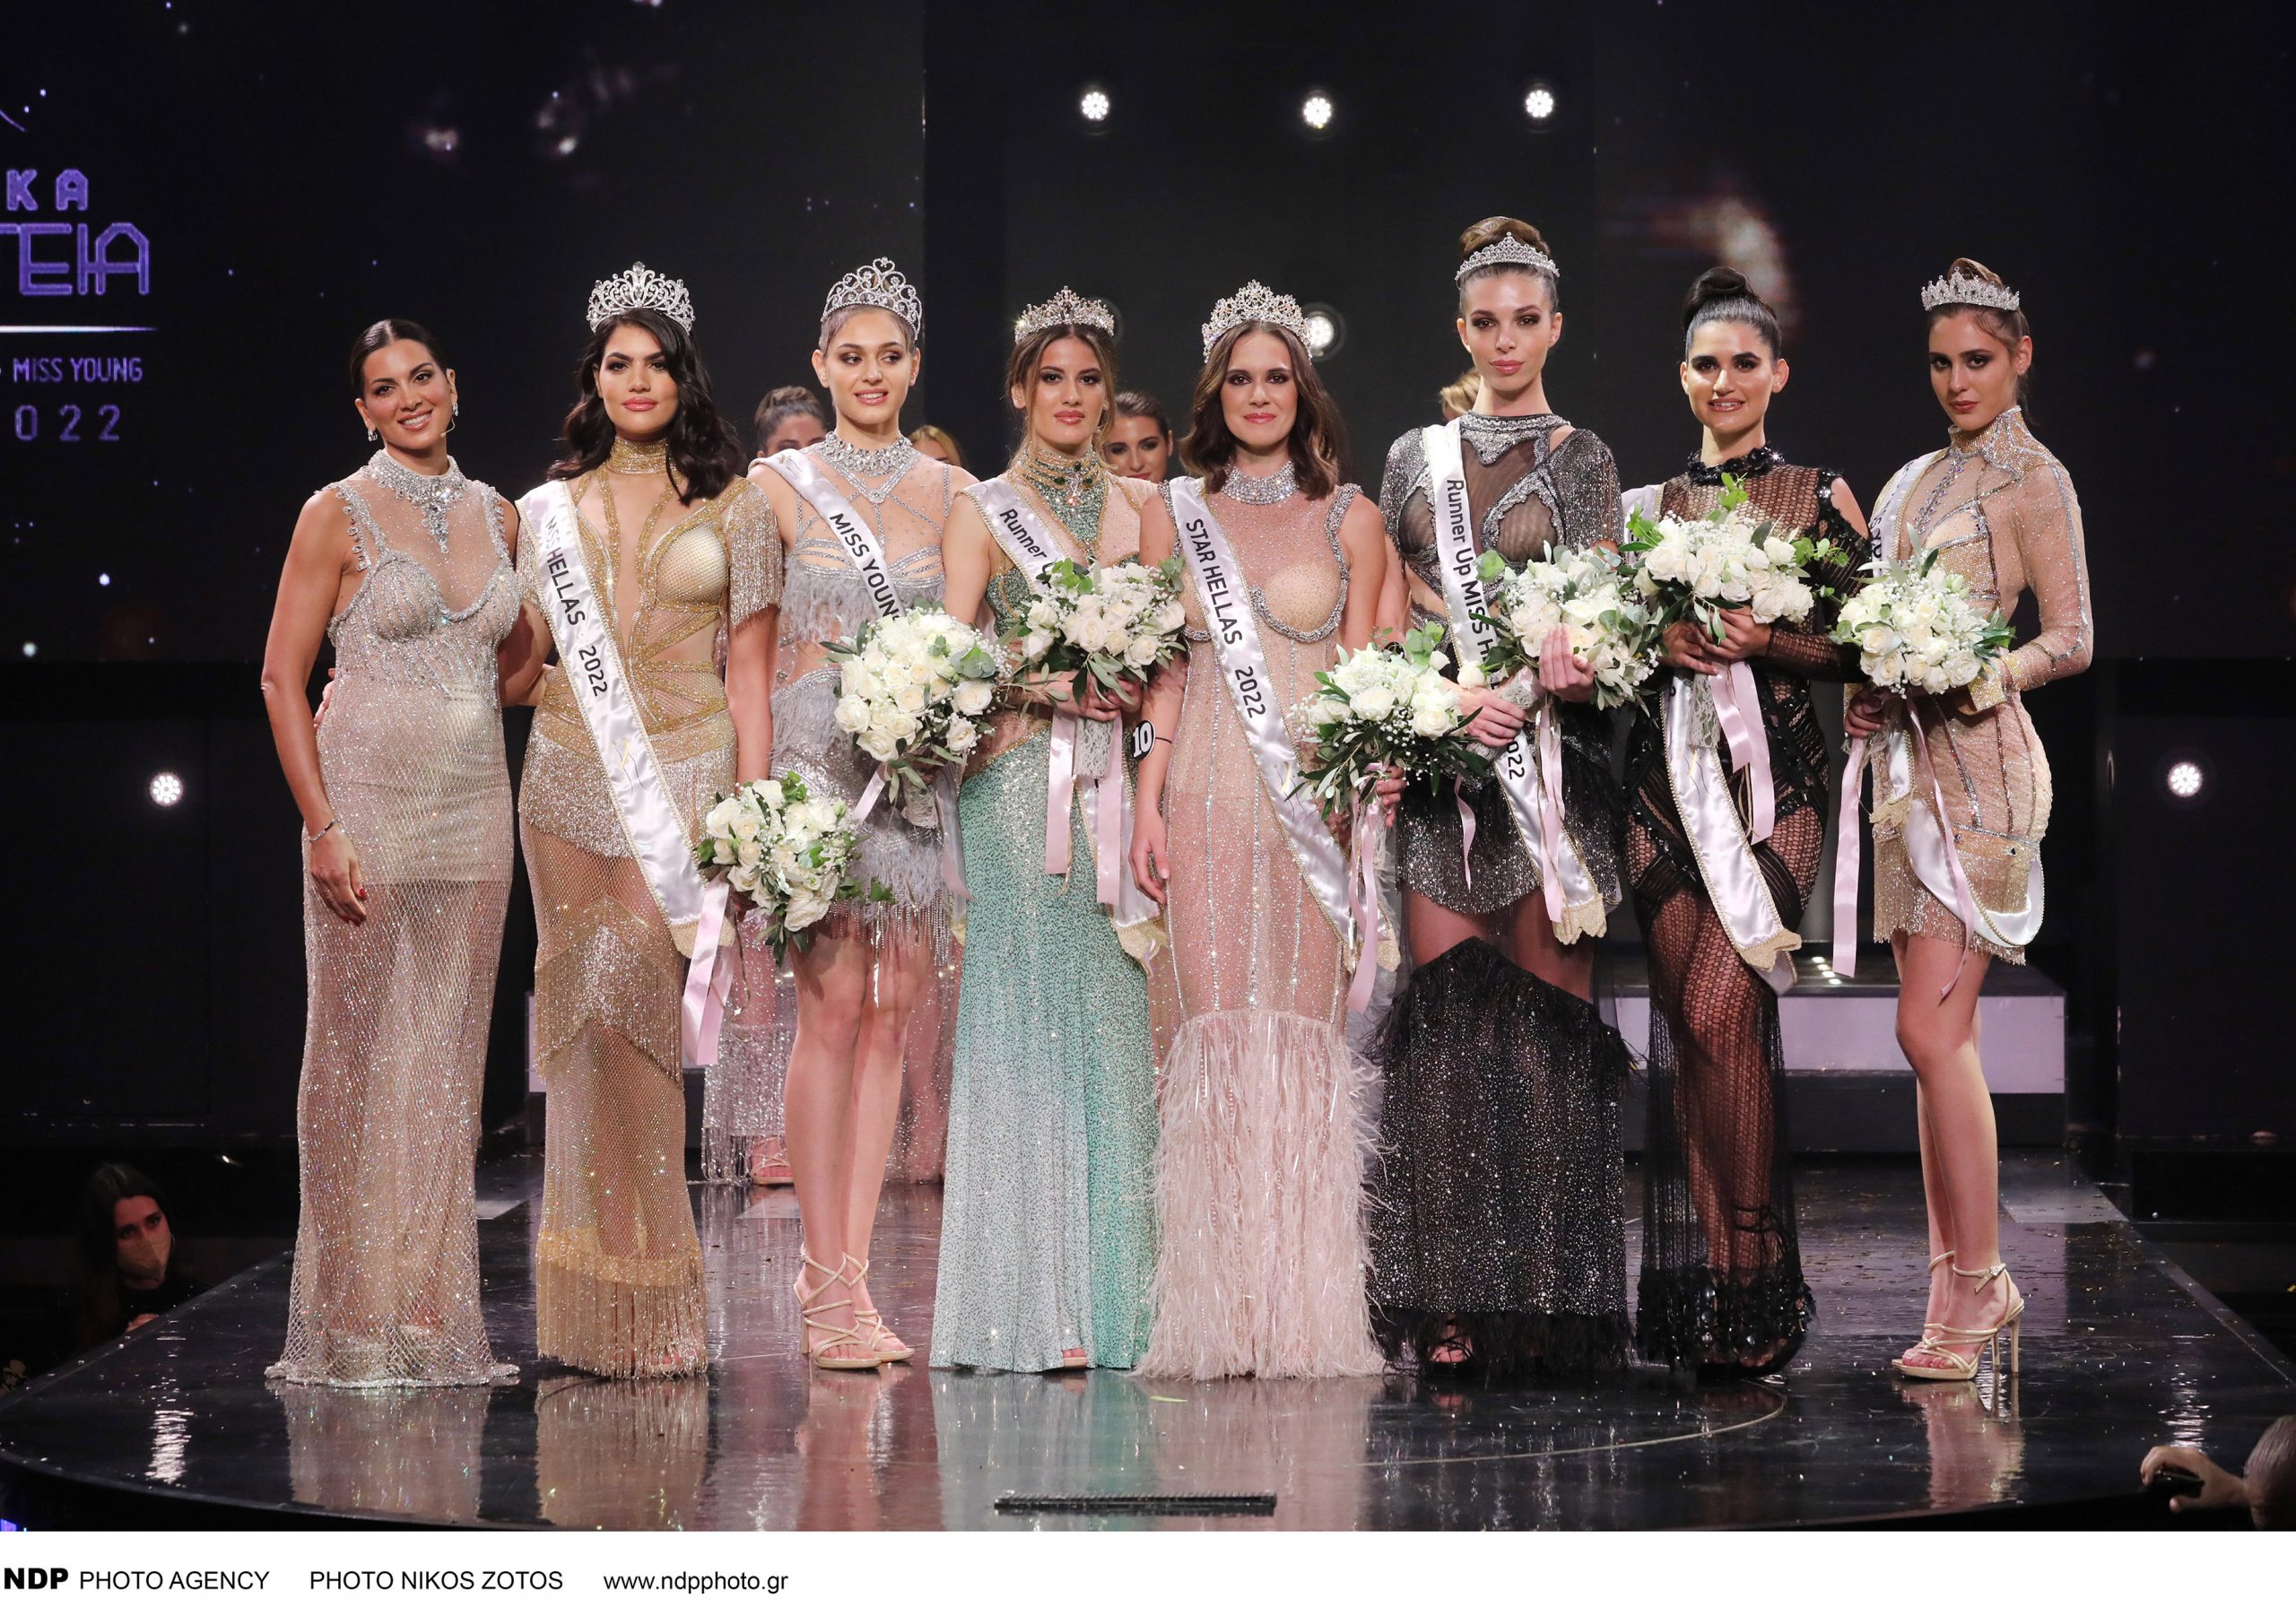 Πραγματοποιήθηκε ο 70ος Διαγωνισμός Ομορφιάς Star Hellas - Miss Hellas - Miss Young 2022